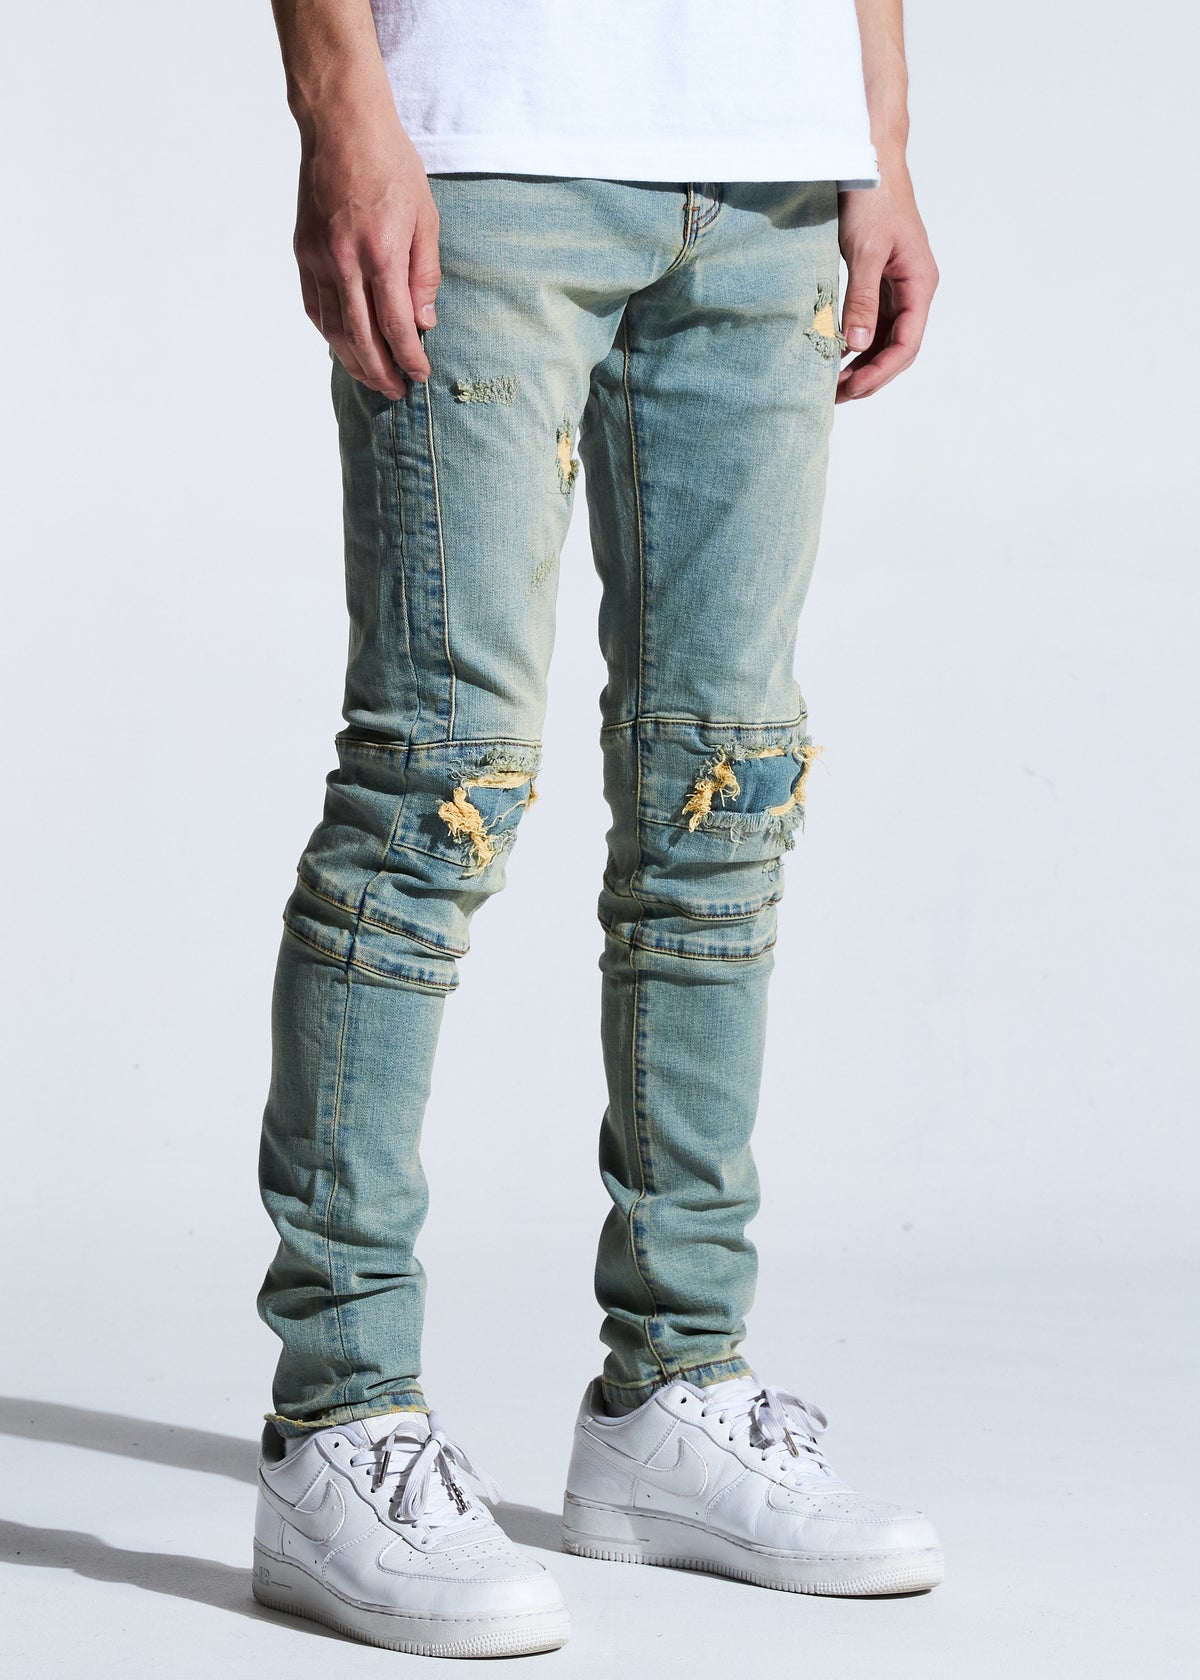 Crysp Denim-Hudson Skinny Jeans-Vintage Blue